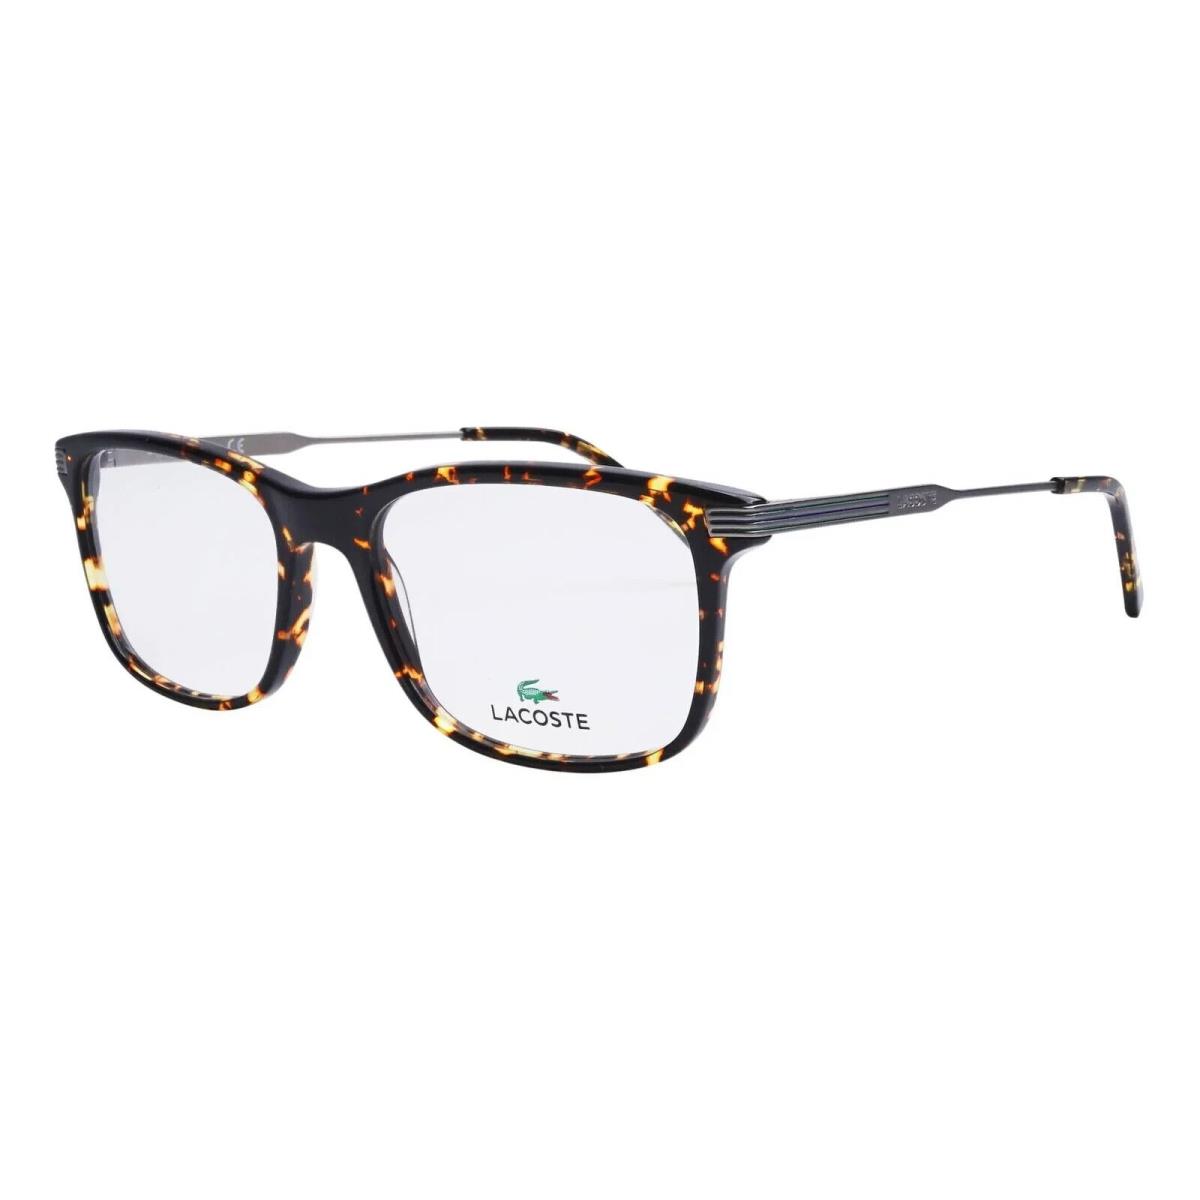 Lacoste L2888 240 55mm Dark Brown Tortoise and Silver Metal Unisex Eyeglasses